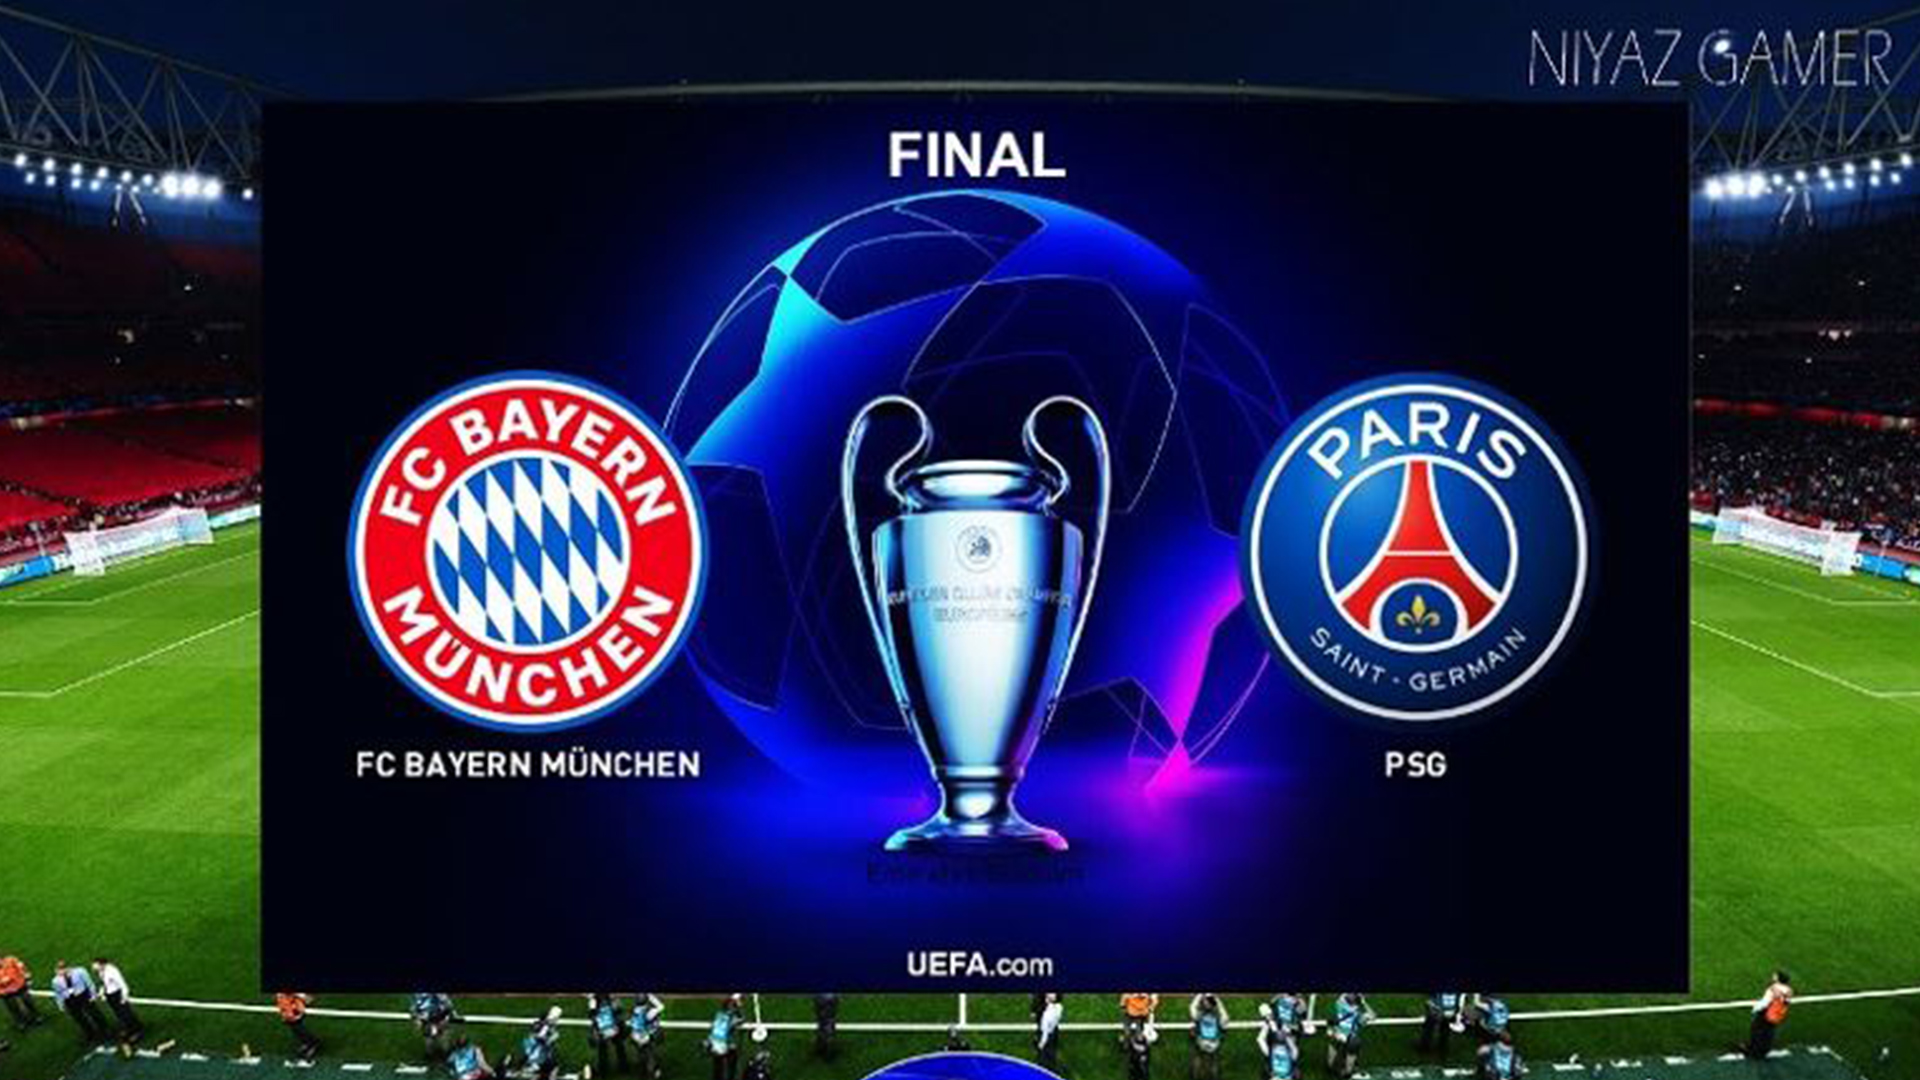 UEFA finals tonight at 1:15 Nepal Time - Bayern Munich vs PSG